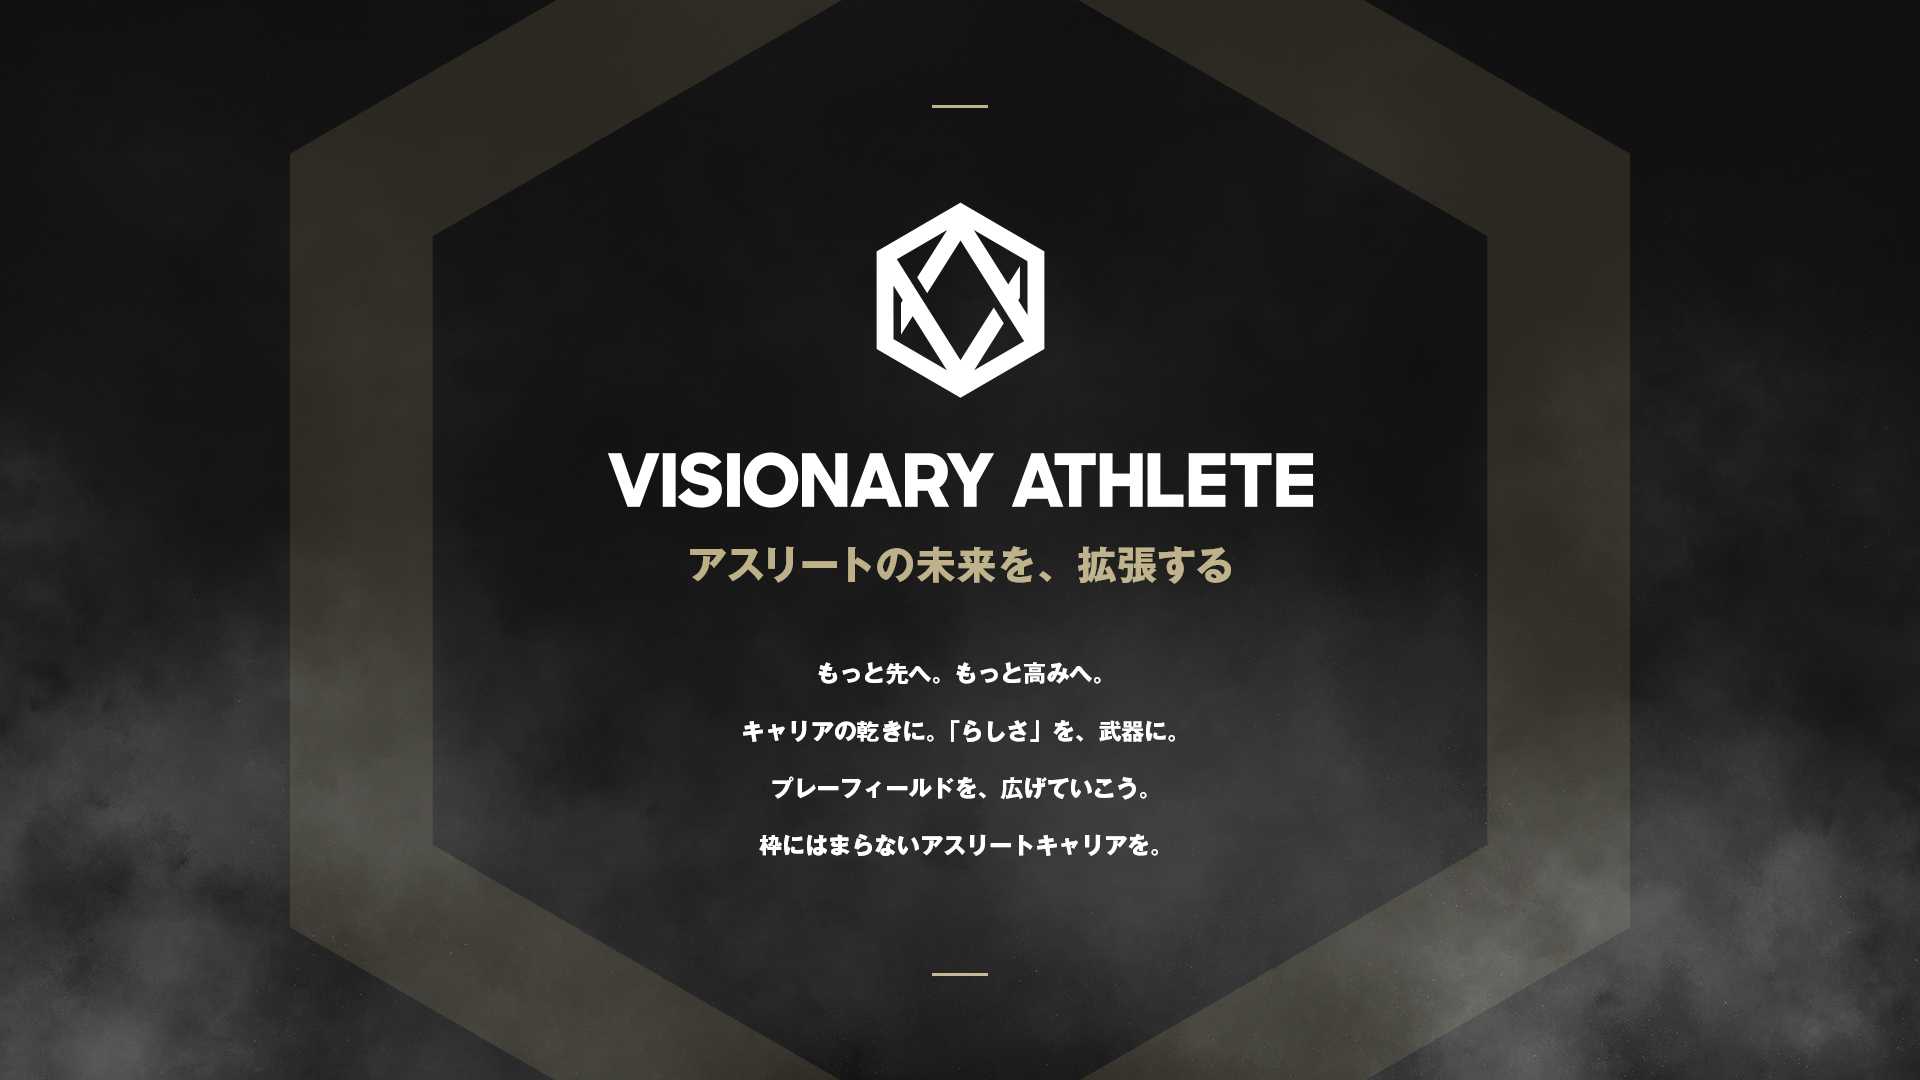 アスリートの未来を 拡張する Webサイト Visionary Athlete をオープン 株式会社ジャパン スポーツ プロモーションのプレスリリース